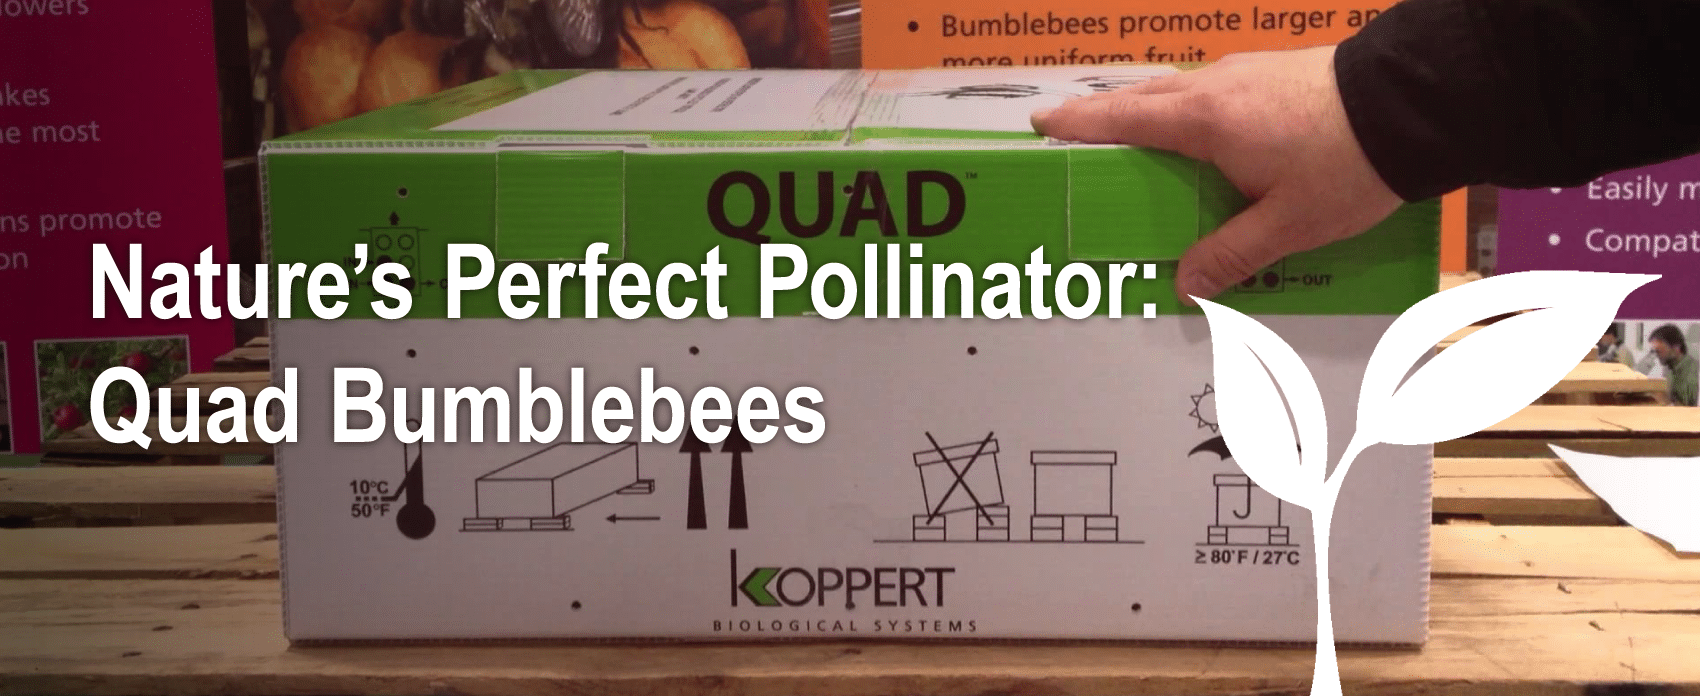 A box of Quad Bumblebees